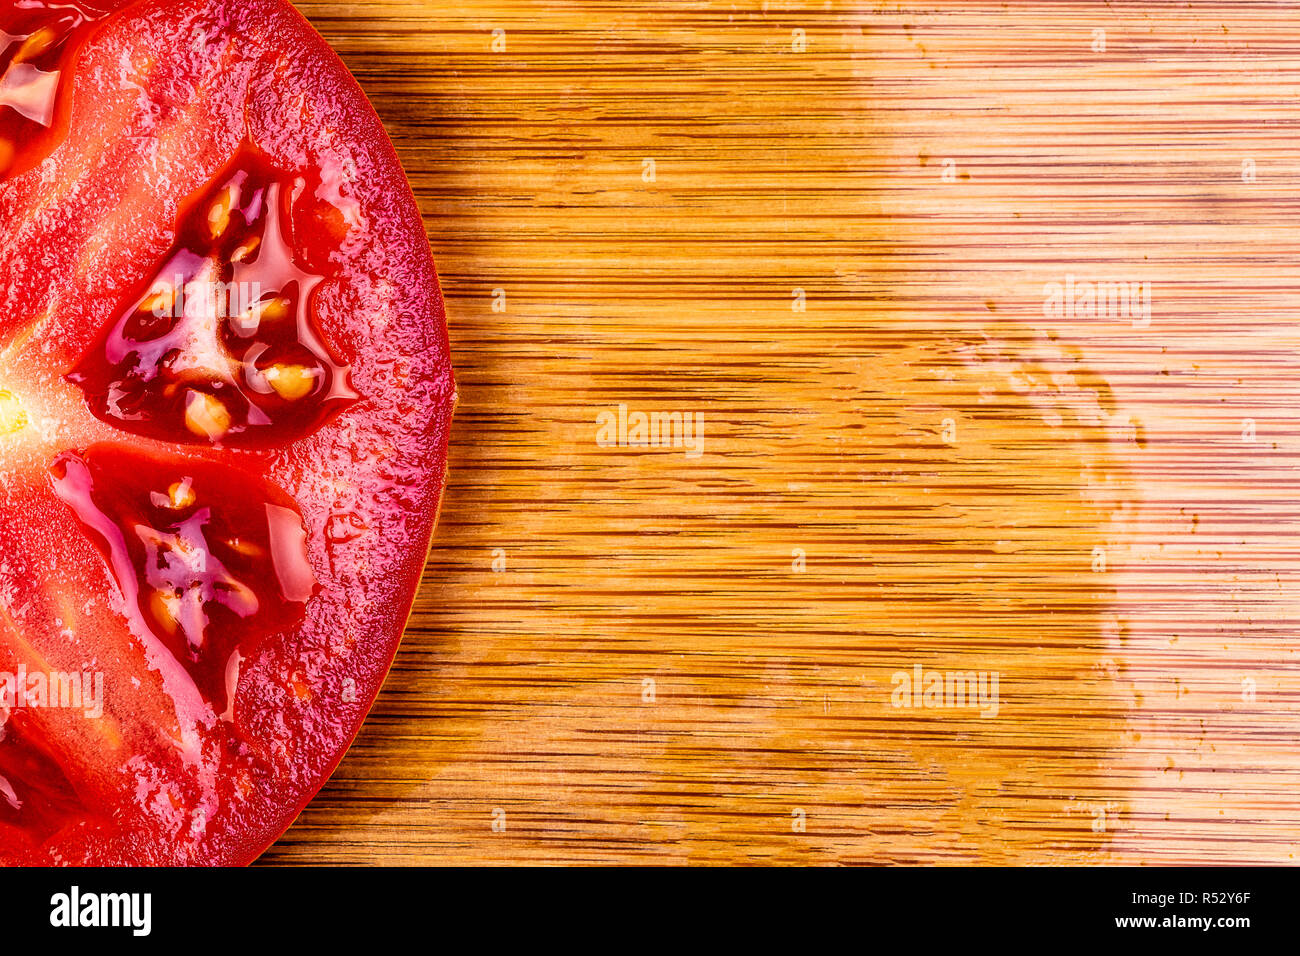 Ein Makro Abbild eines einzigen Tomate Scheibe auf einem Bambus Schneidebrett. Schuß zu liefern Kopie schriftlich Raum auf der rechten Seite der Scheibe. Schwerpunkt ist scharf und c Stockfoto